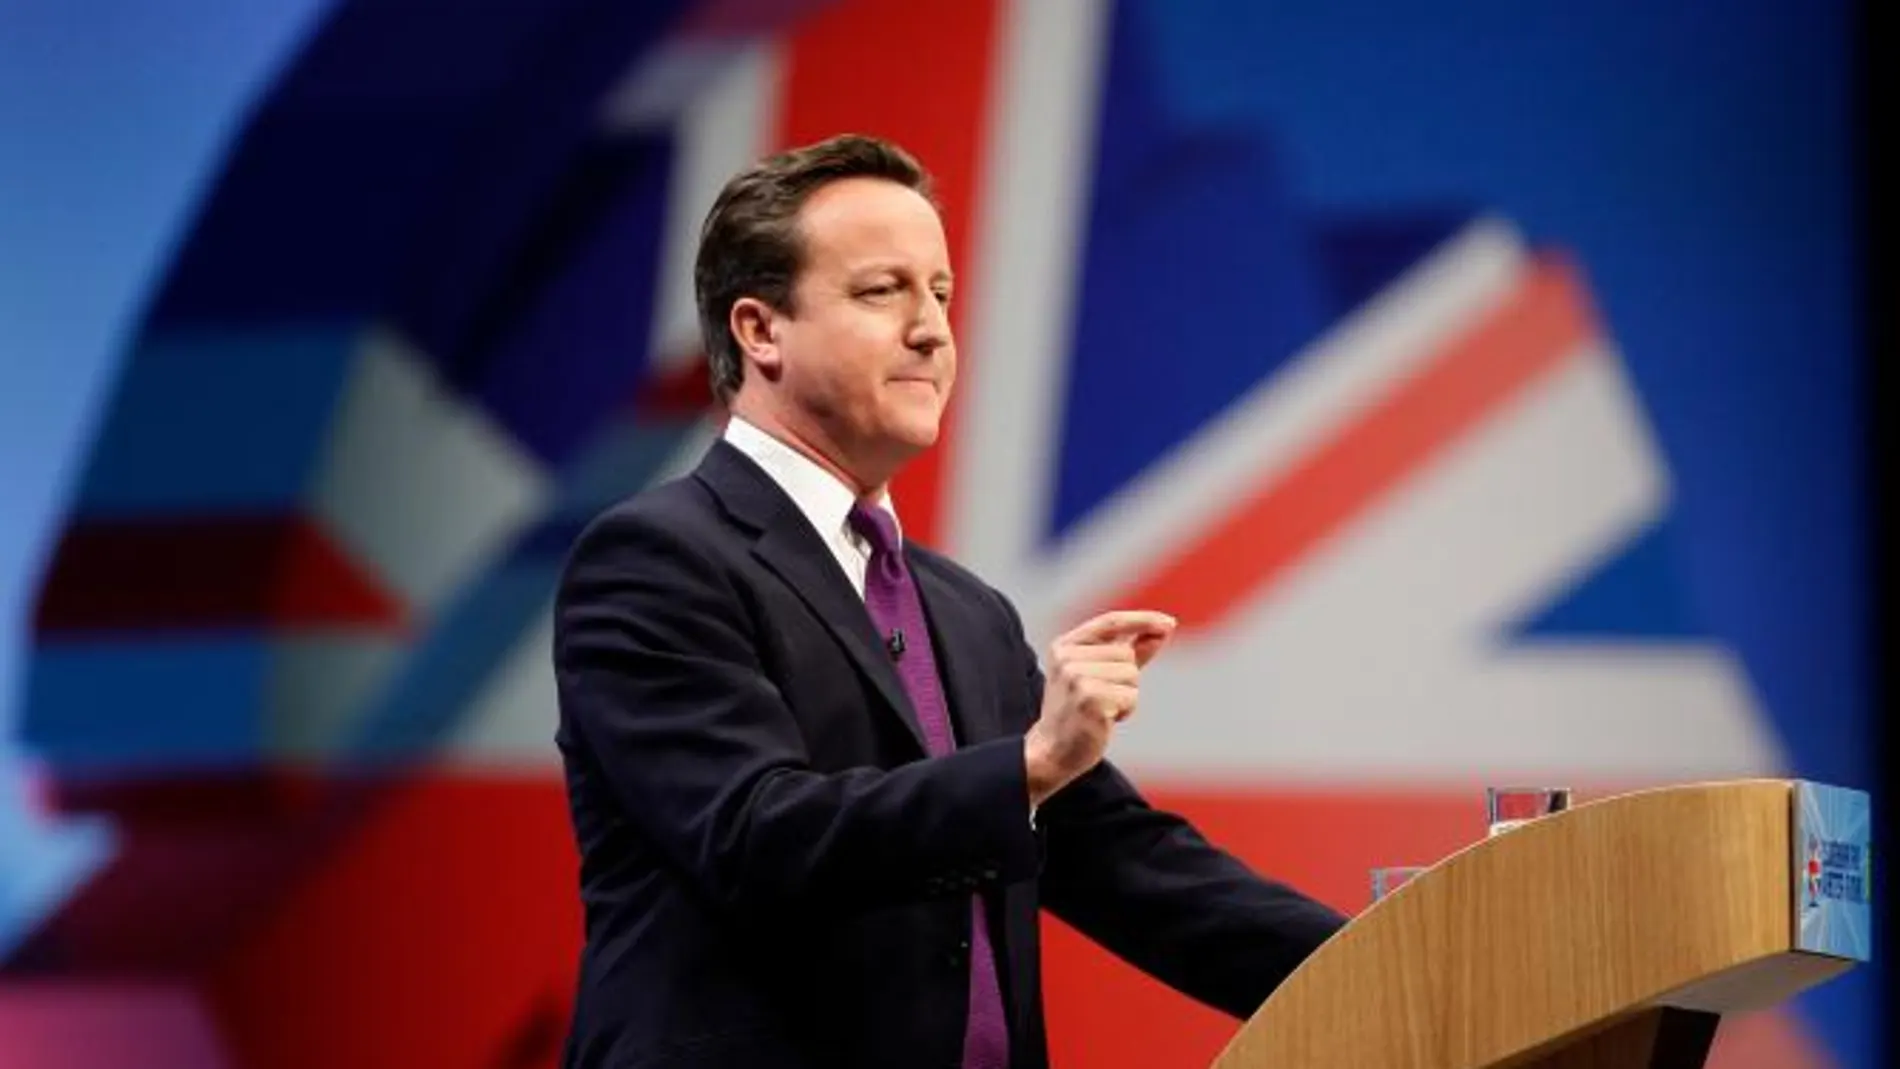 El primer ministro británico David Cameron durante el congreso anual del Partido Conservador británico